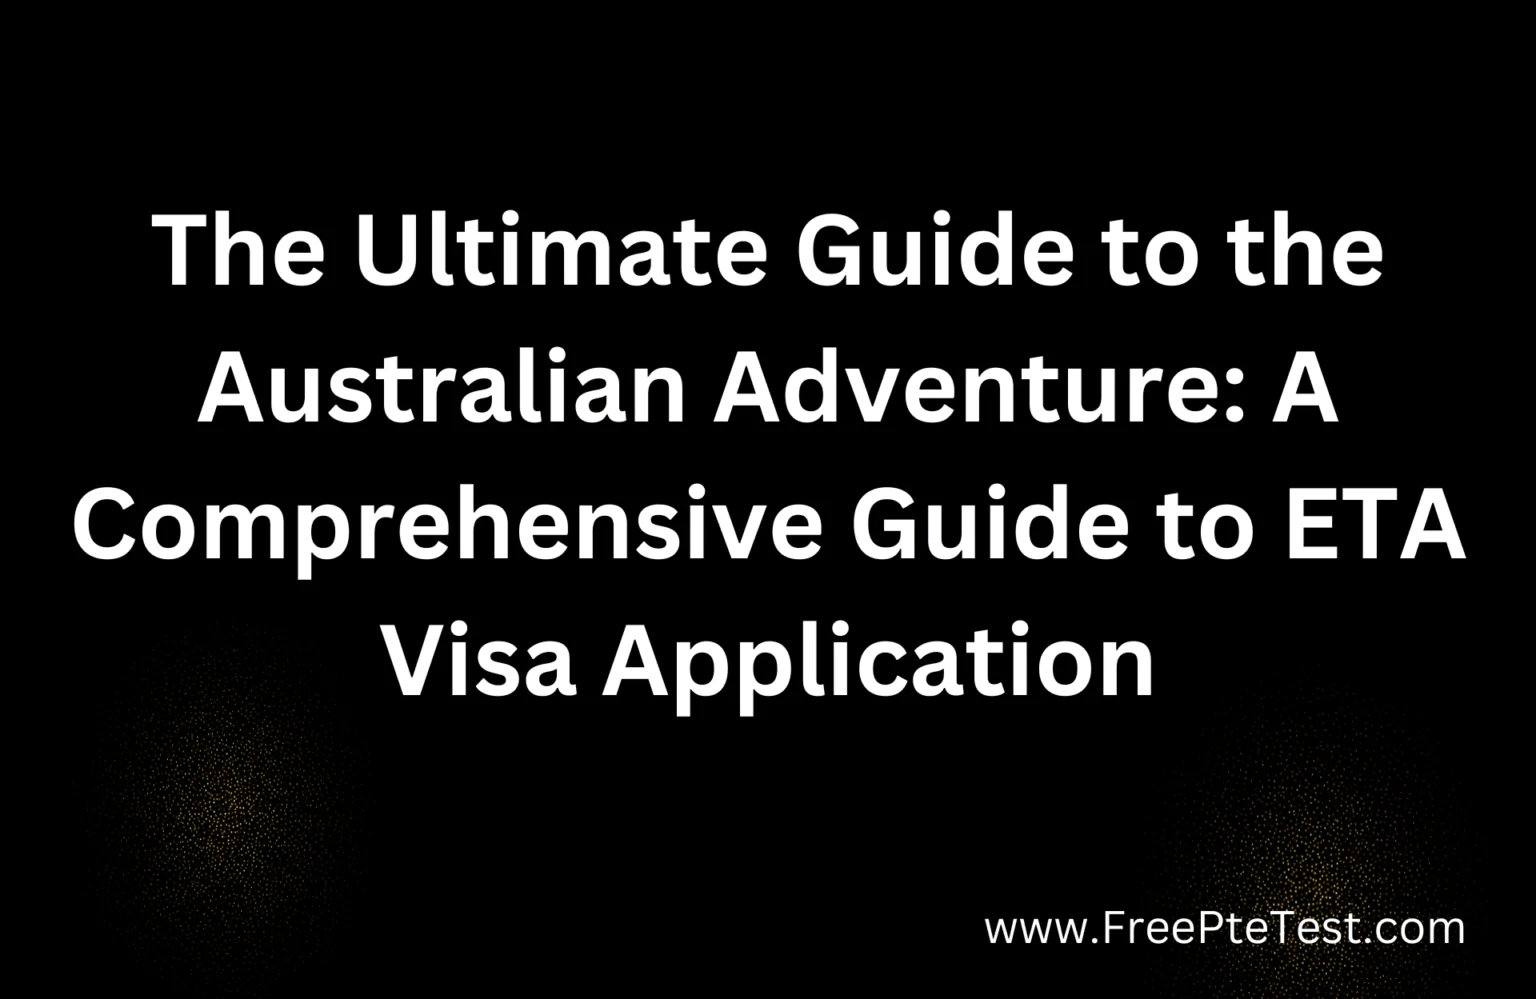 A Comprehensive Guide to ETA Visa Application